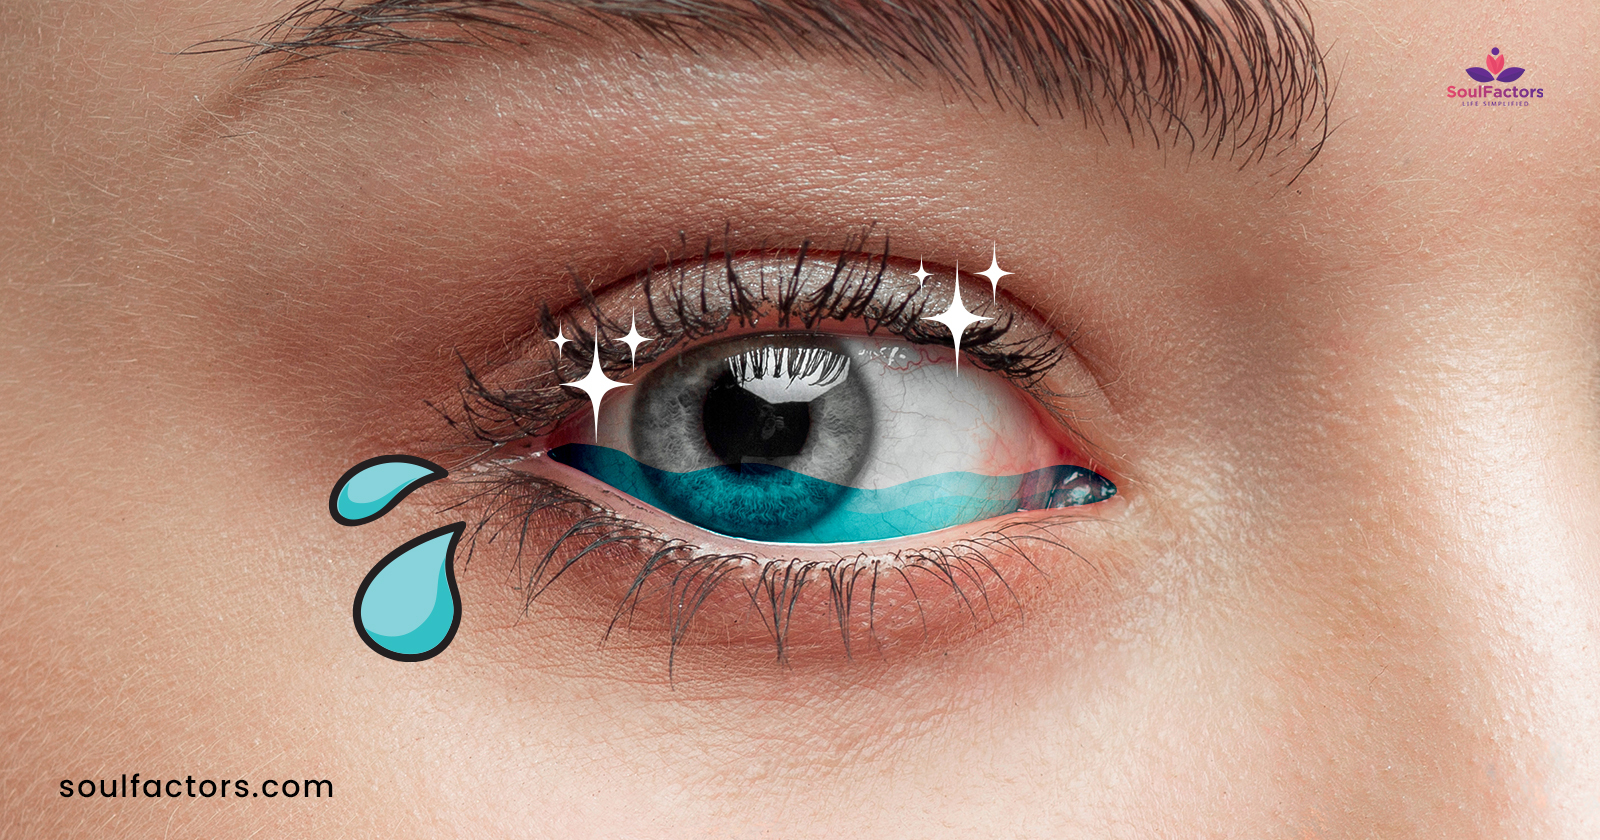 Does Crying Make Your Eyelashes Longer?